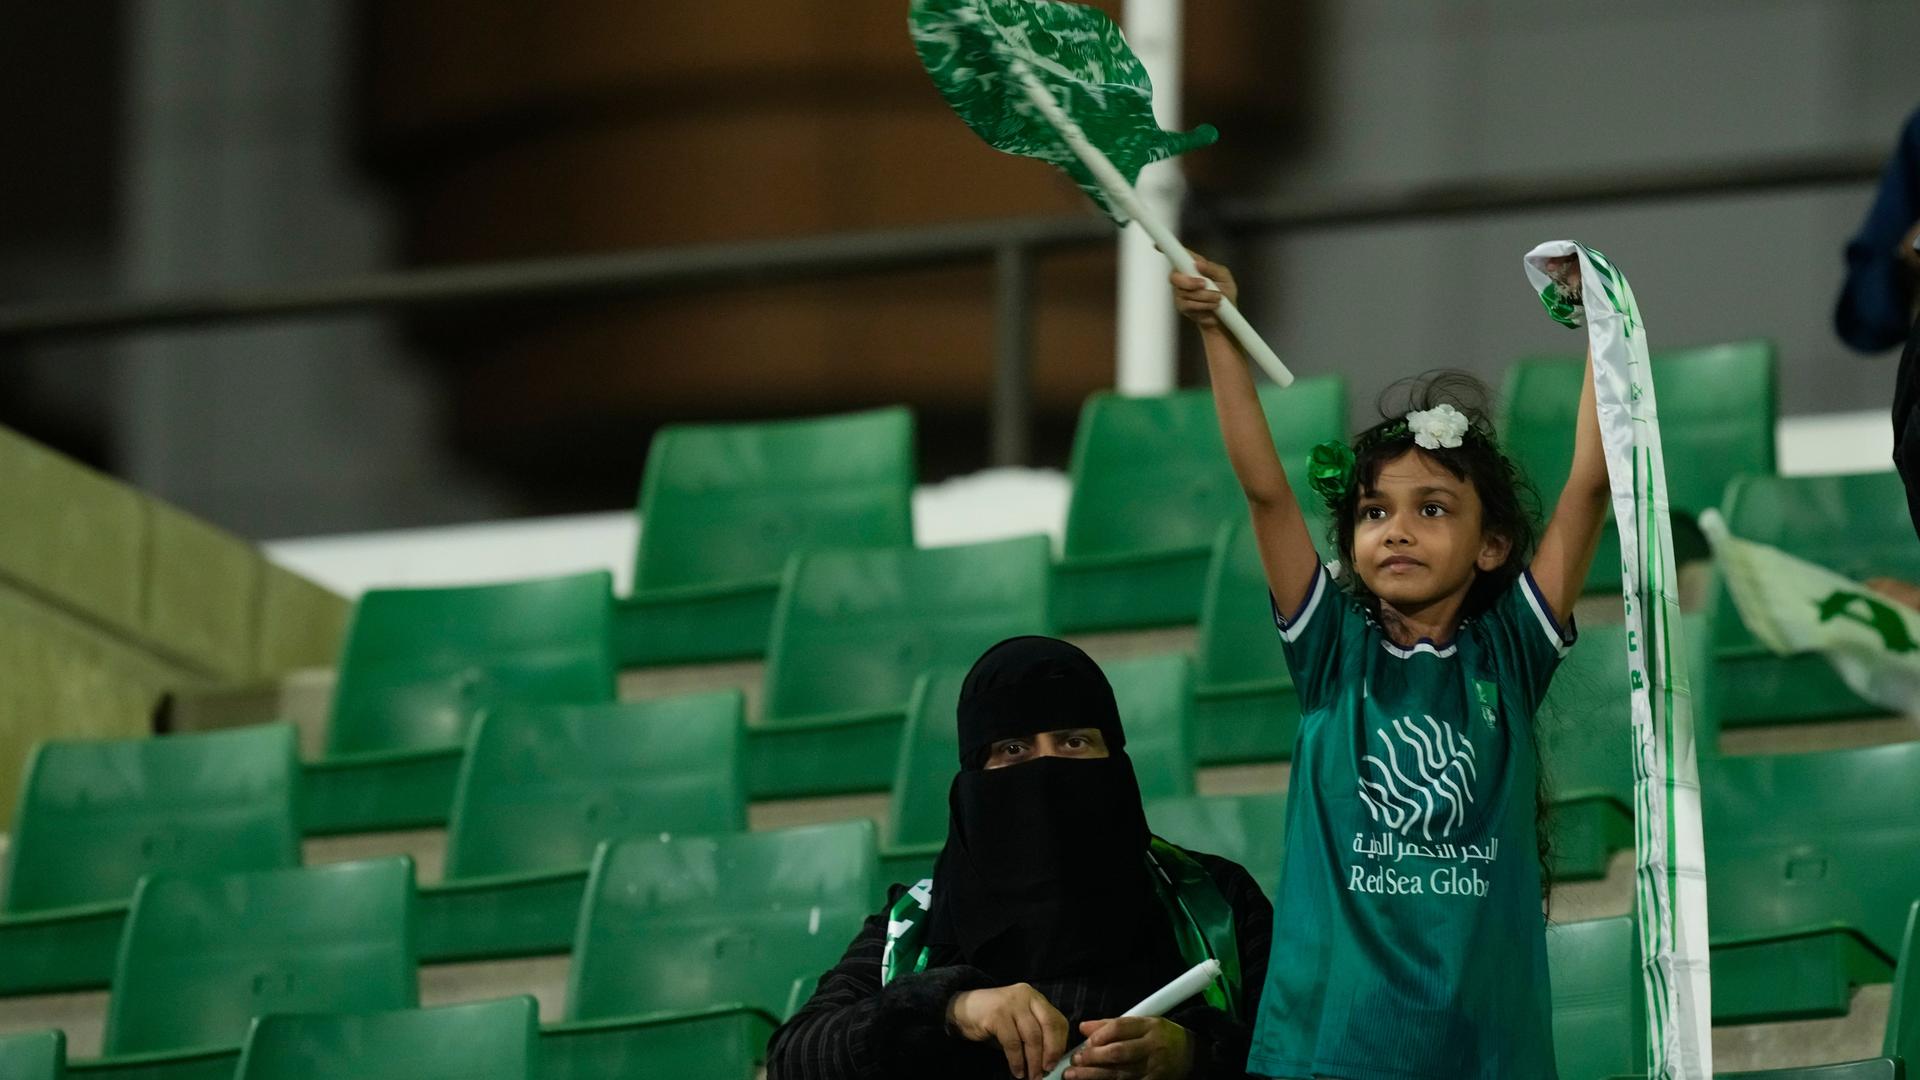 Al-Ahly-Fans jubeln beim Premier-League-Spiel der Frauen zwischen Al Ahli FC und Al Ittihad FC in Jeddah in Saudi-Arabien auf der Tribüne. Ein kleines Mädchen schwenkt dabei eine saudische Fahne. 